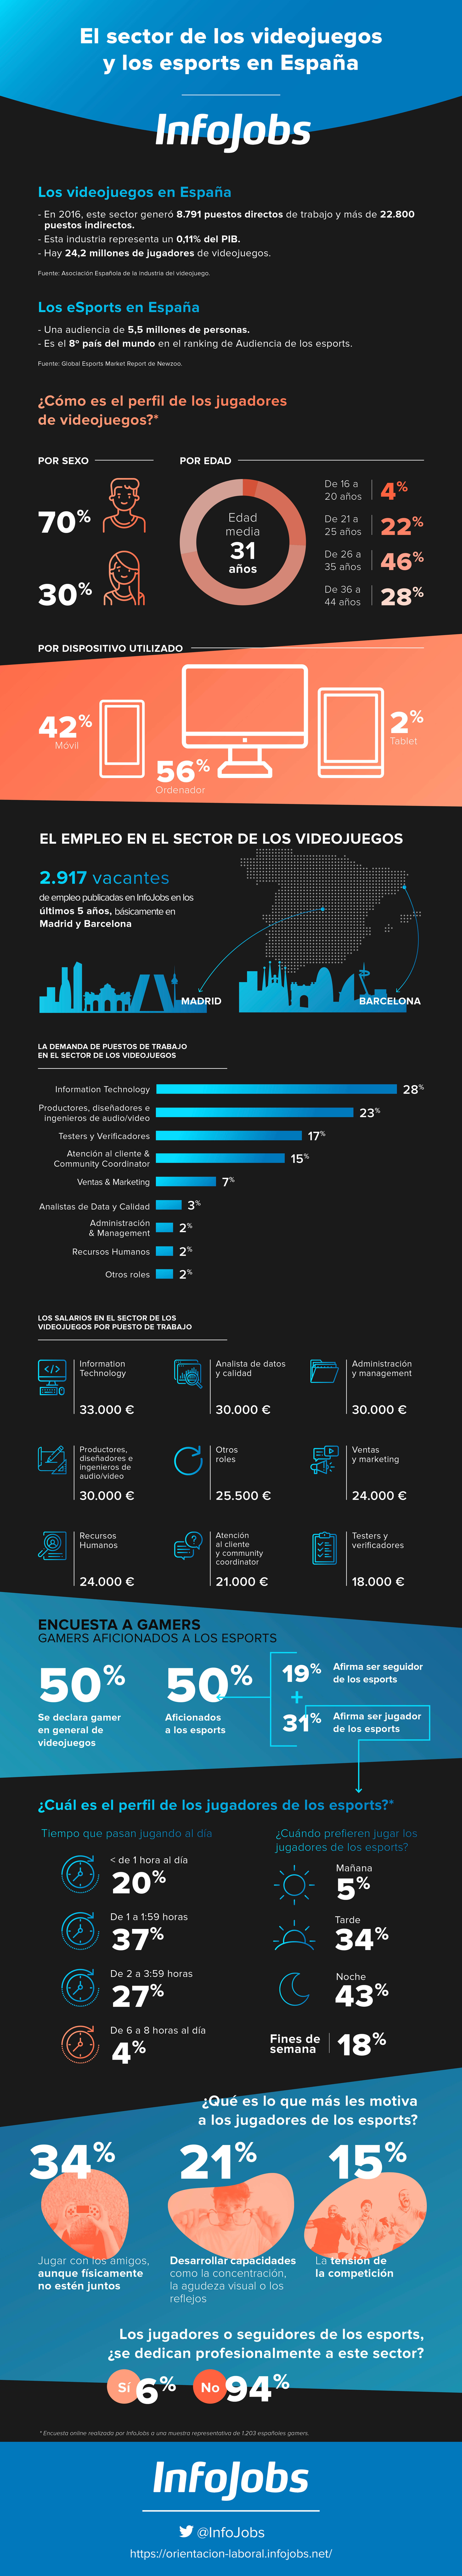 Infografia sobre empleos y profesiones relacionadas a los videojuegos en España